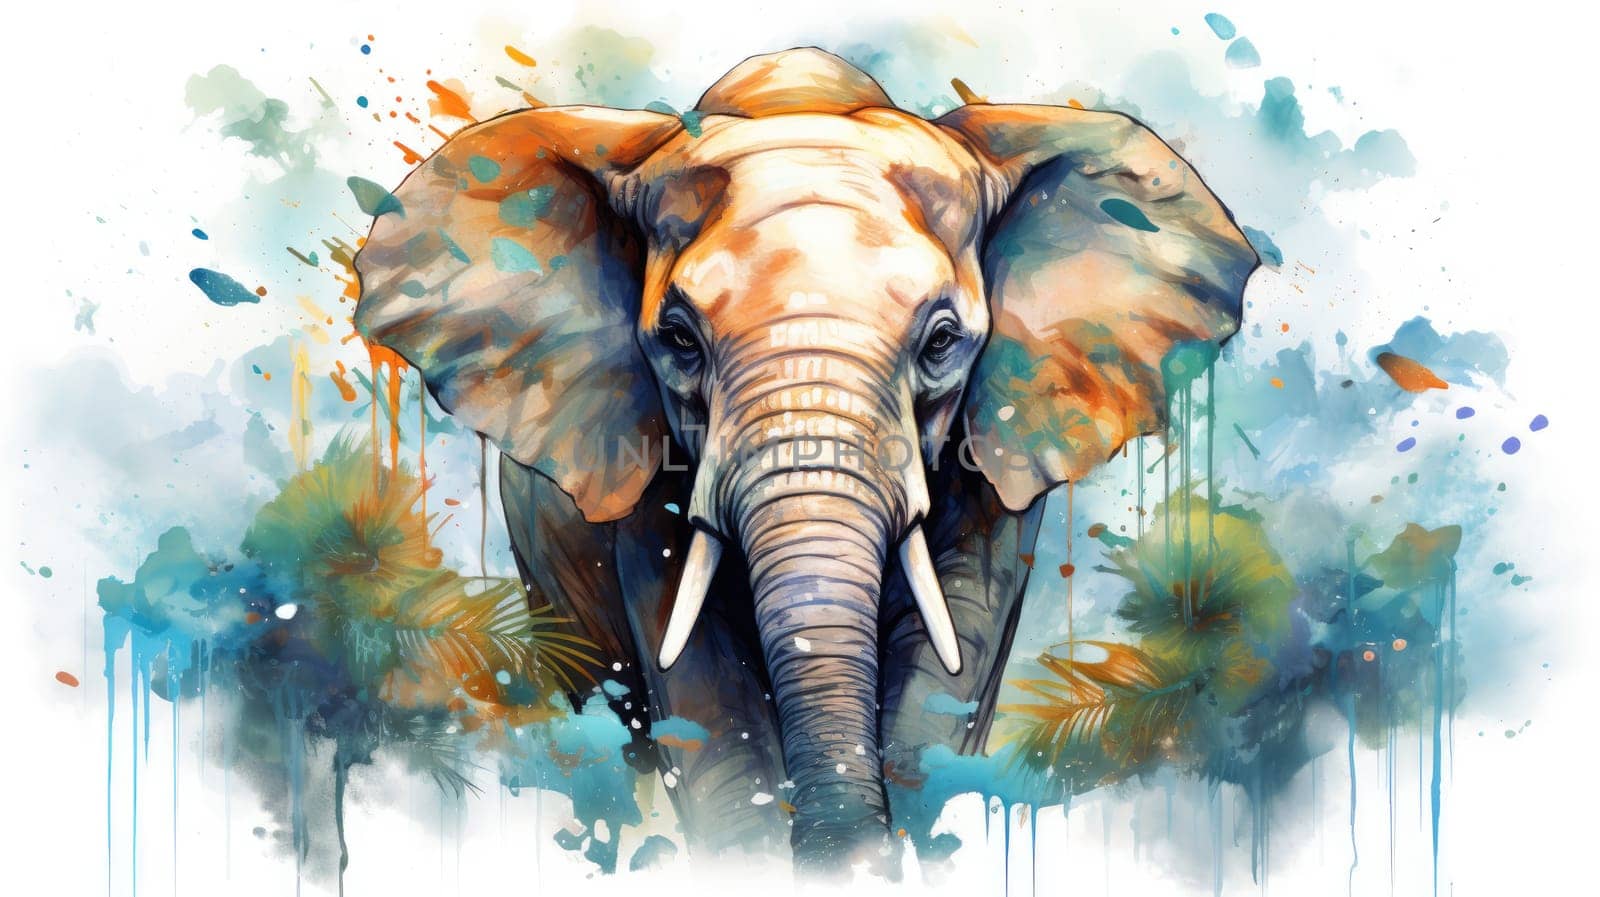 An elephant portrait watercolor illustration